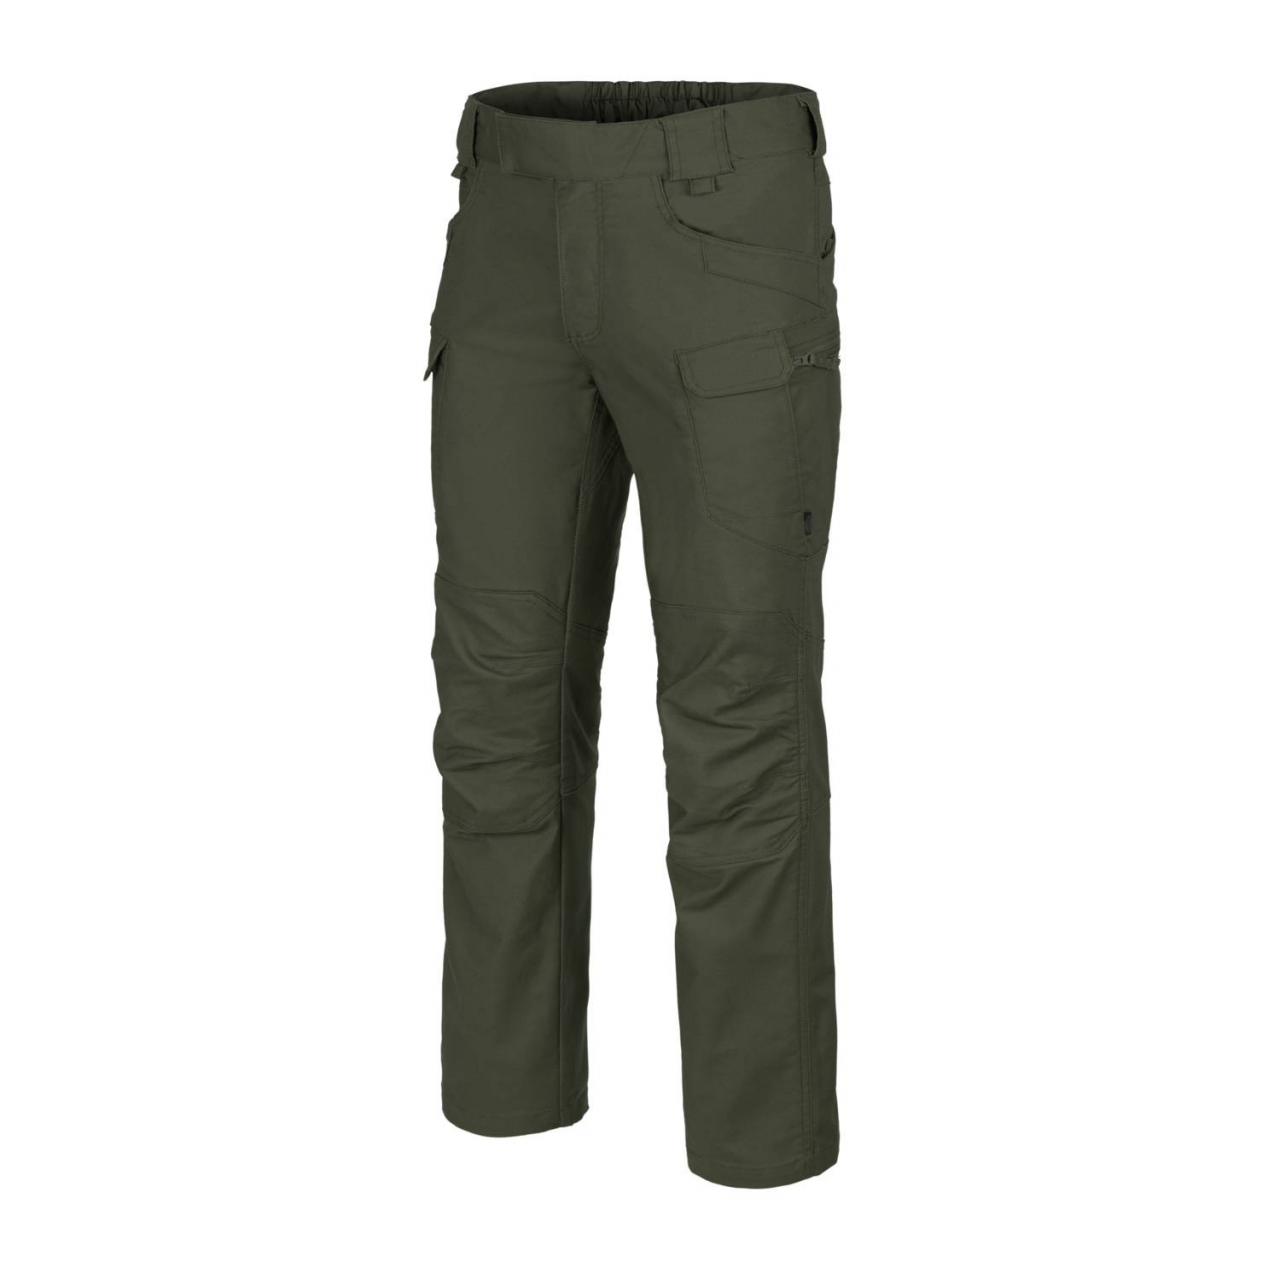 Kalhoty Helikon UTP PolyCotton - tmavě zelené, S Long